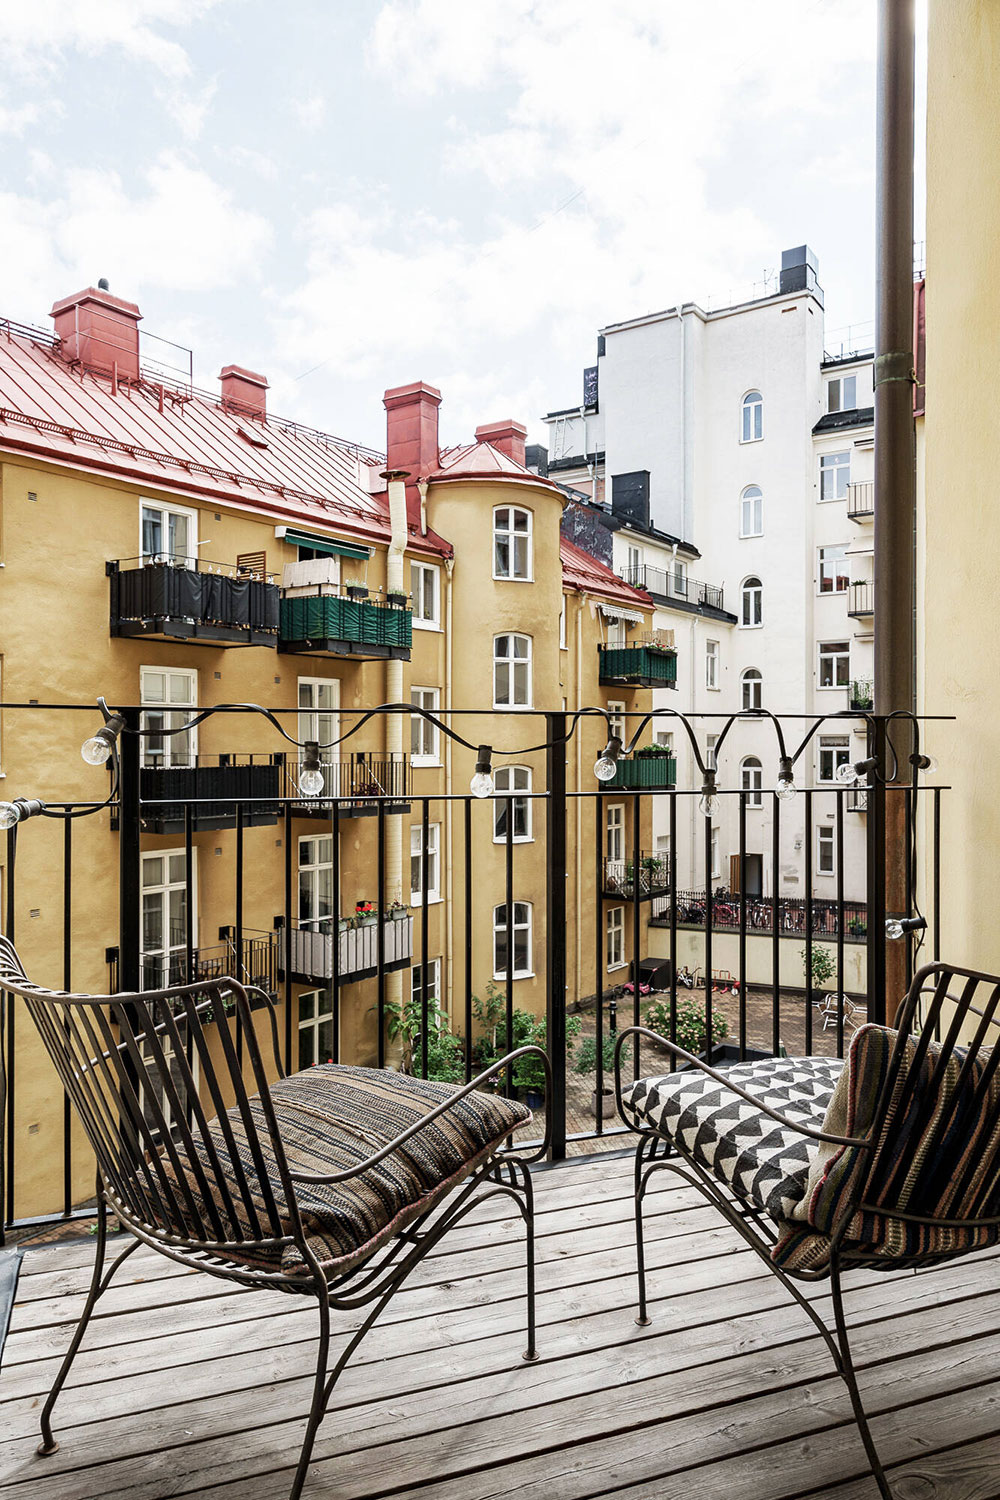 Изысканный дизайн в красивых тонах просторной квартиры в модернистском доме в Стокгольме